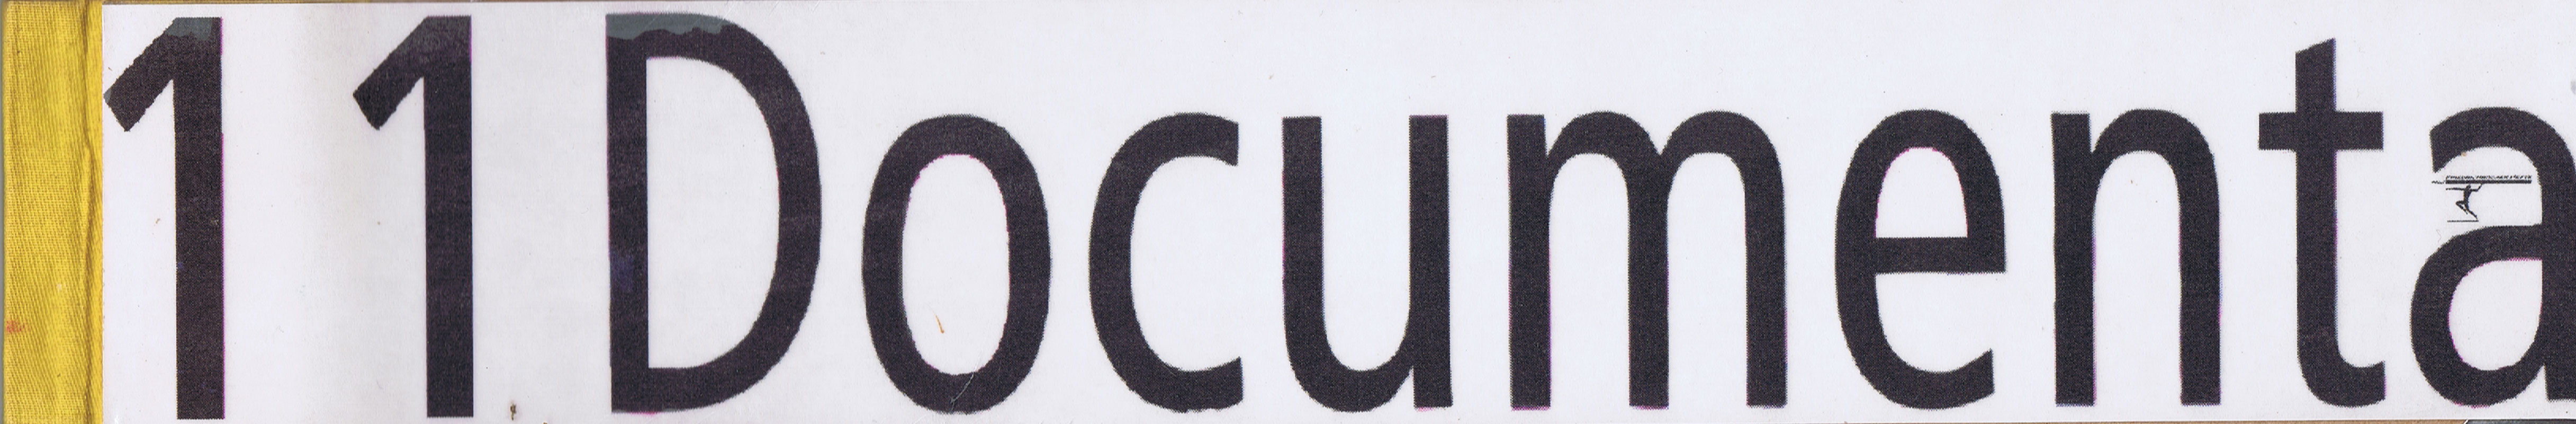 11-documenta-gedruckt